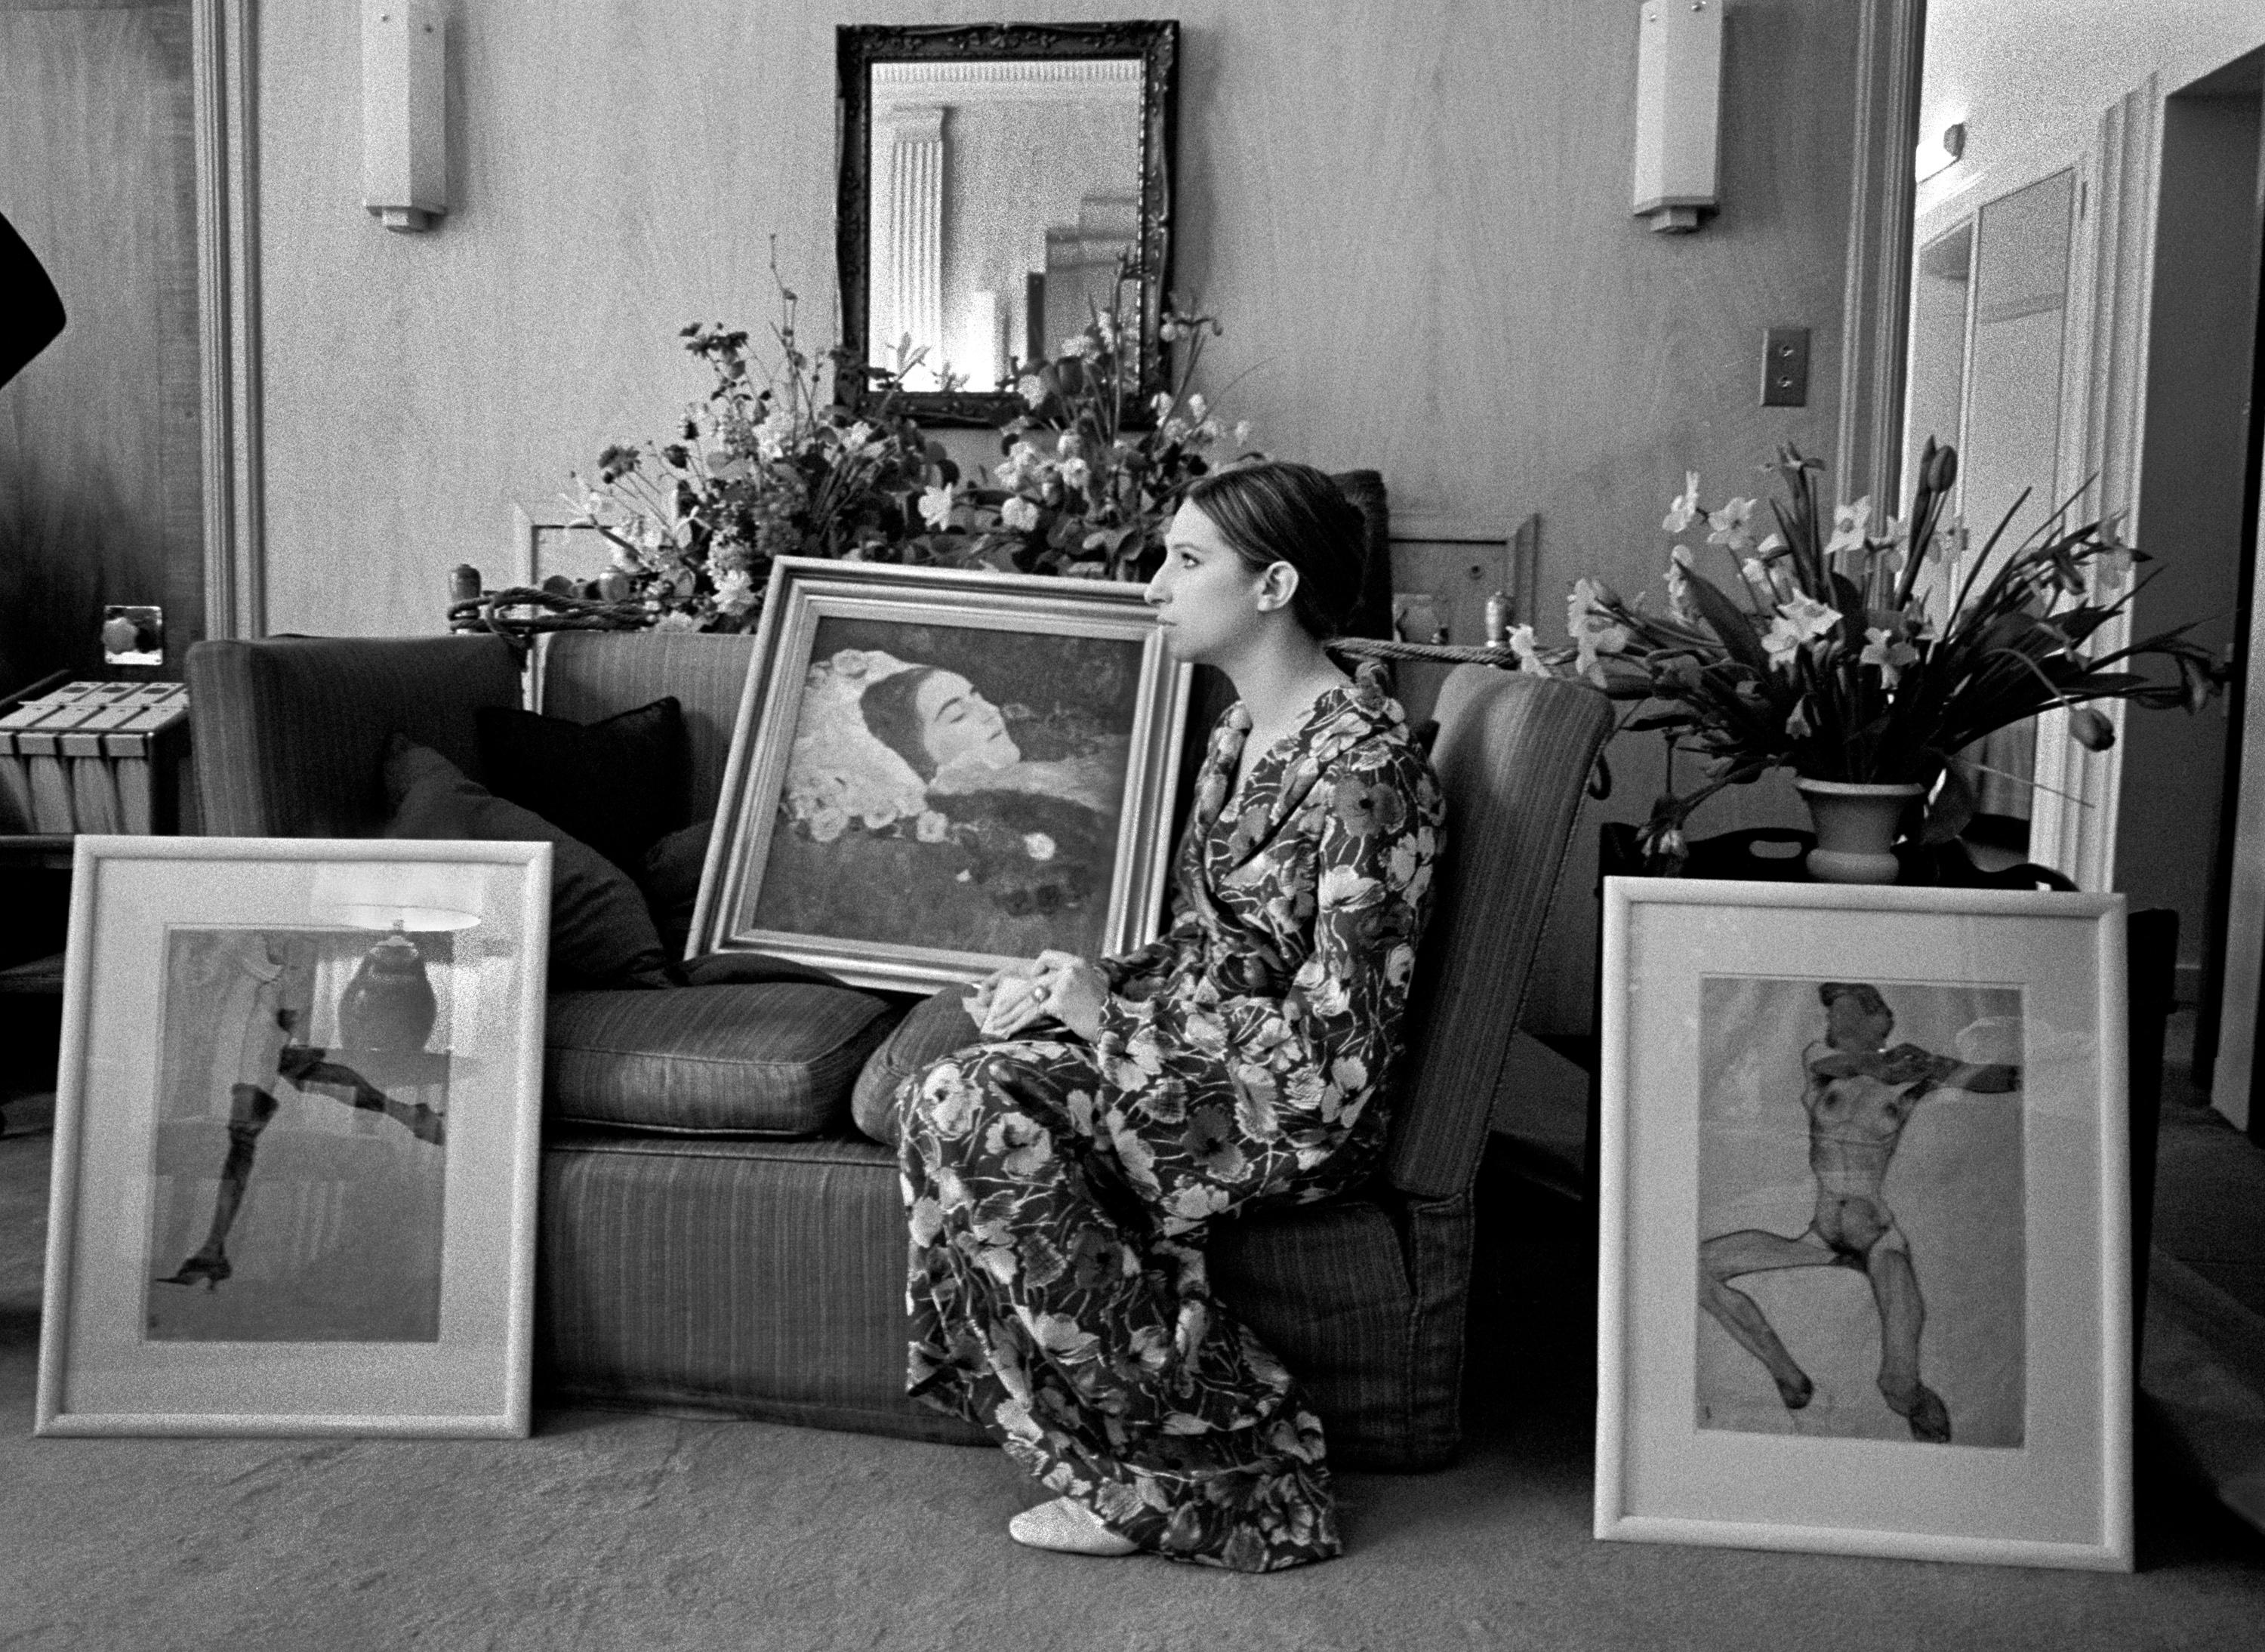 Barbara Streisand, 1969" par le photographe américain Lawrence Schiller. Pigment numérique, Ed. 10/35. Image : 13.75 x 19 in. / Papier : 16 x 20 in. Cette photographie en noir et blanc montre Barbara Streisand de profil, assise à côté d'un tableau